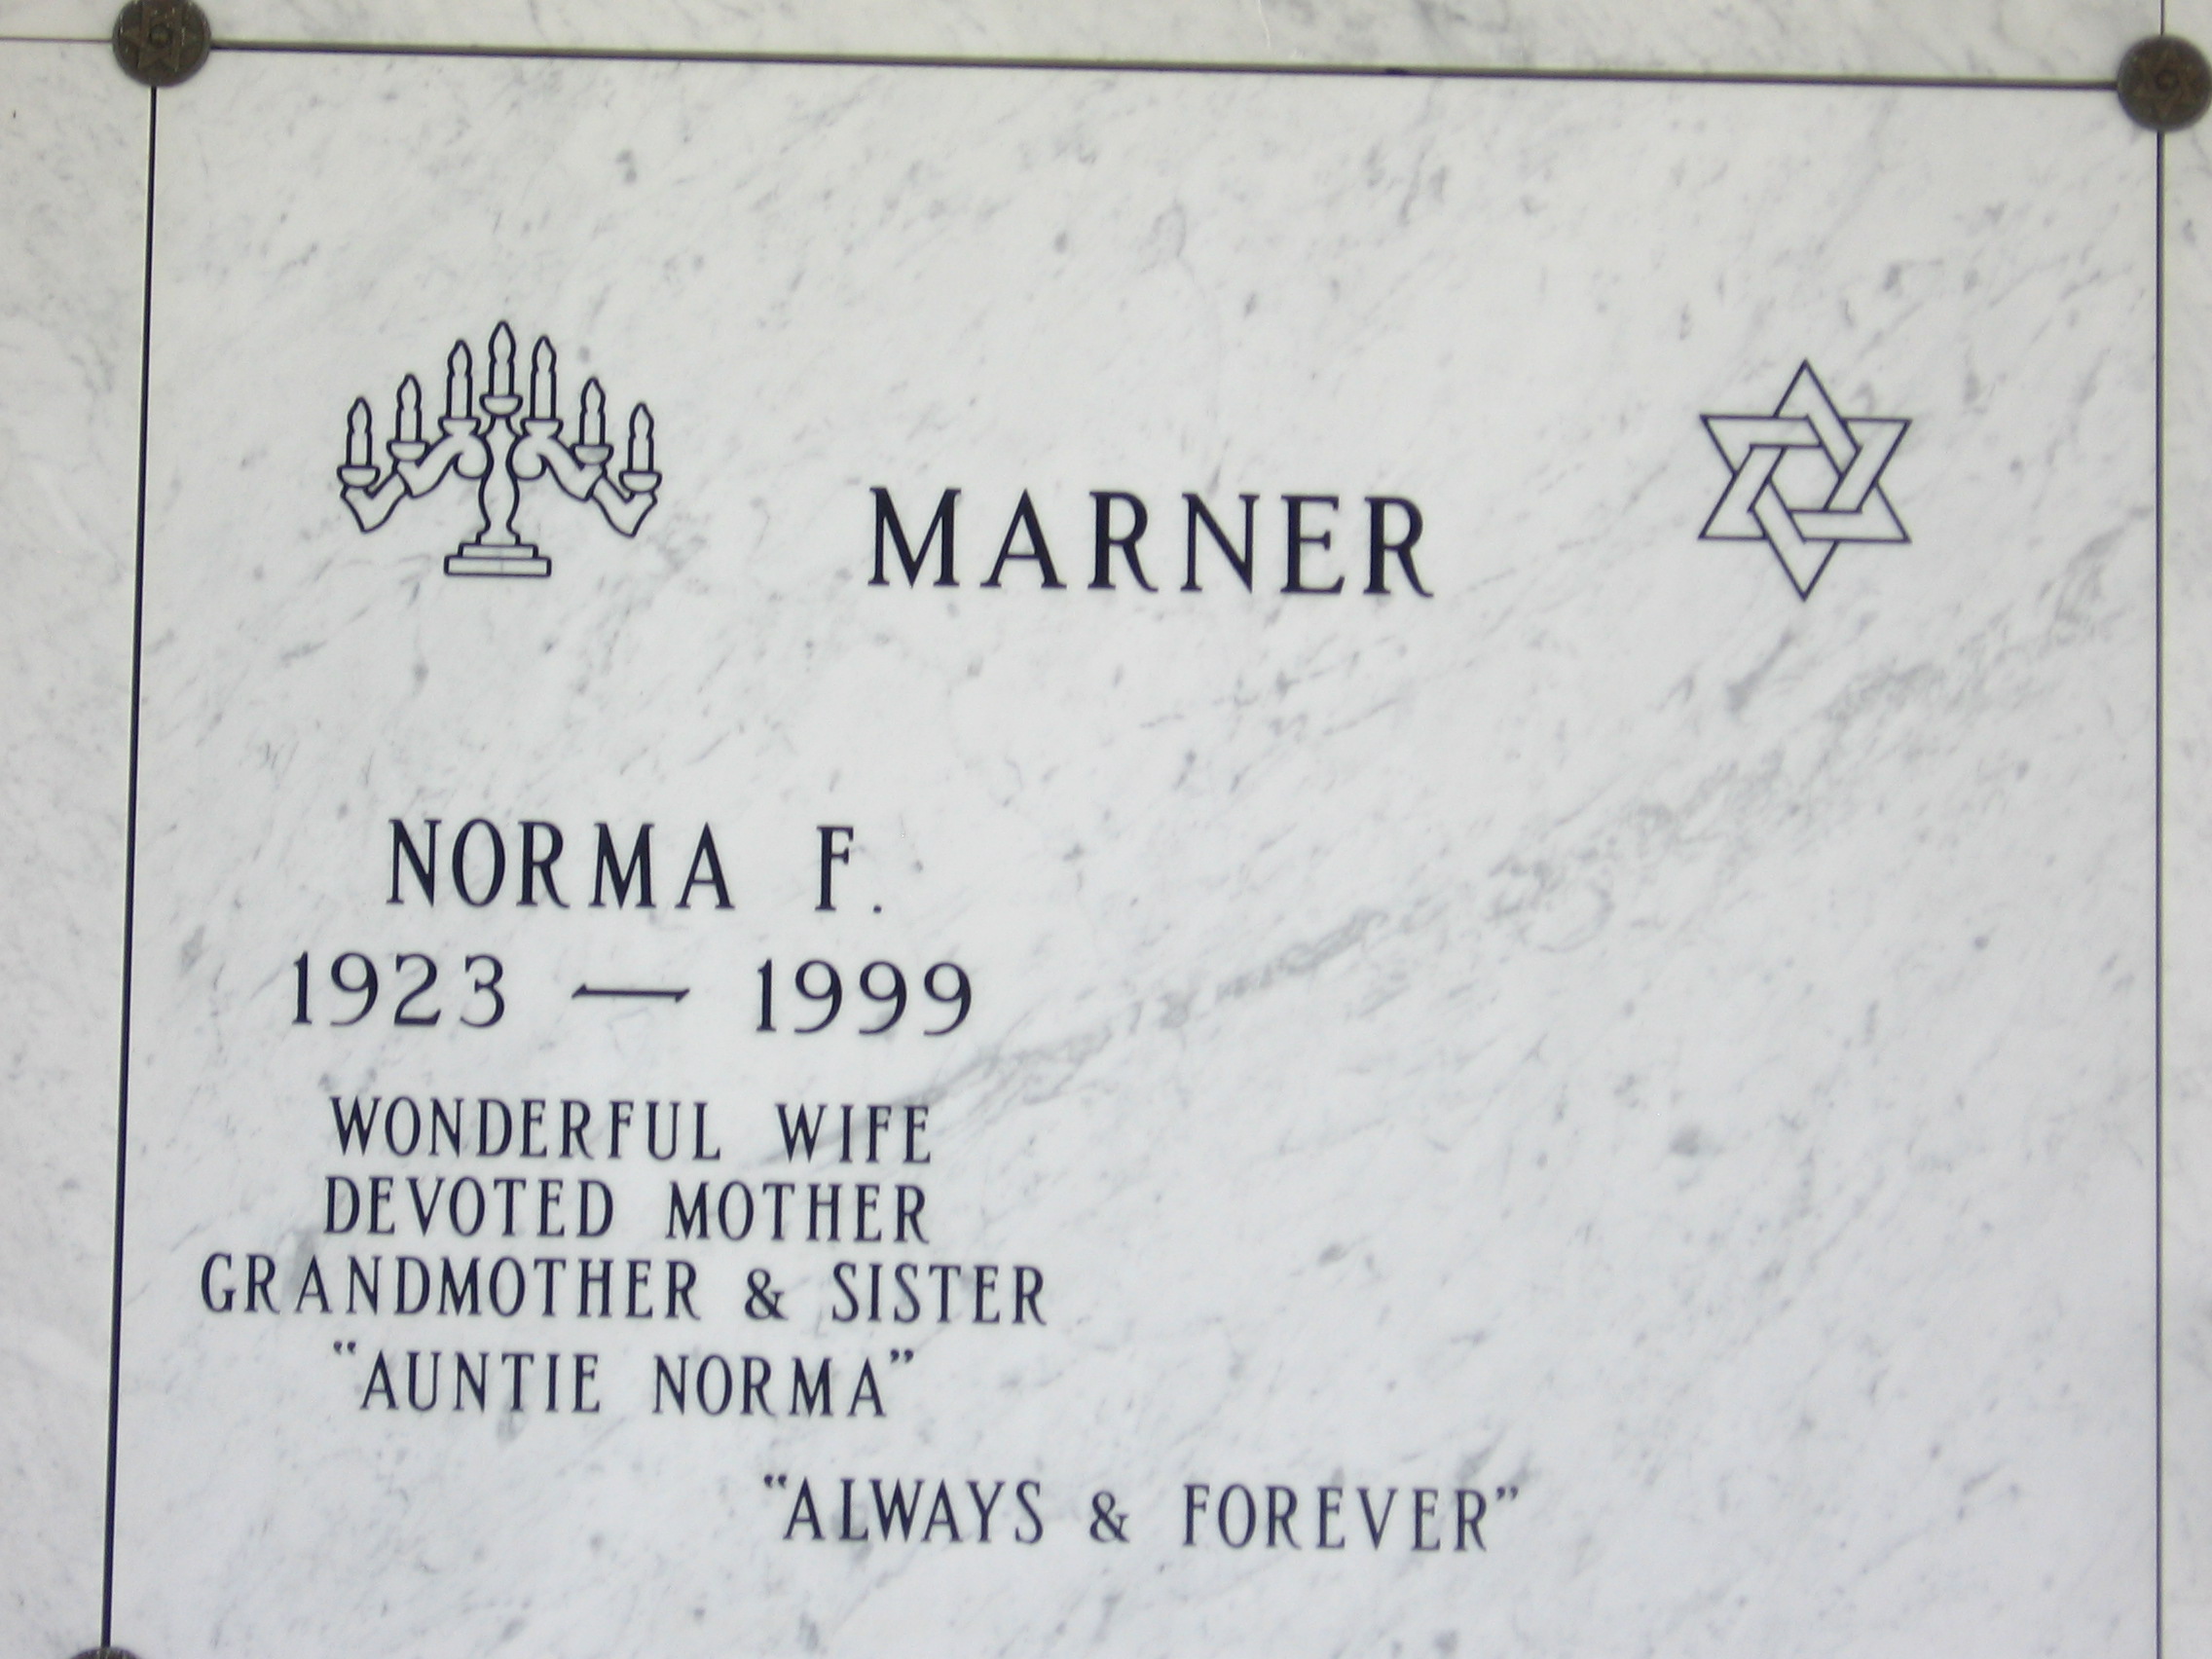 Norma F "Auntie Norma" Marner